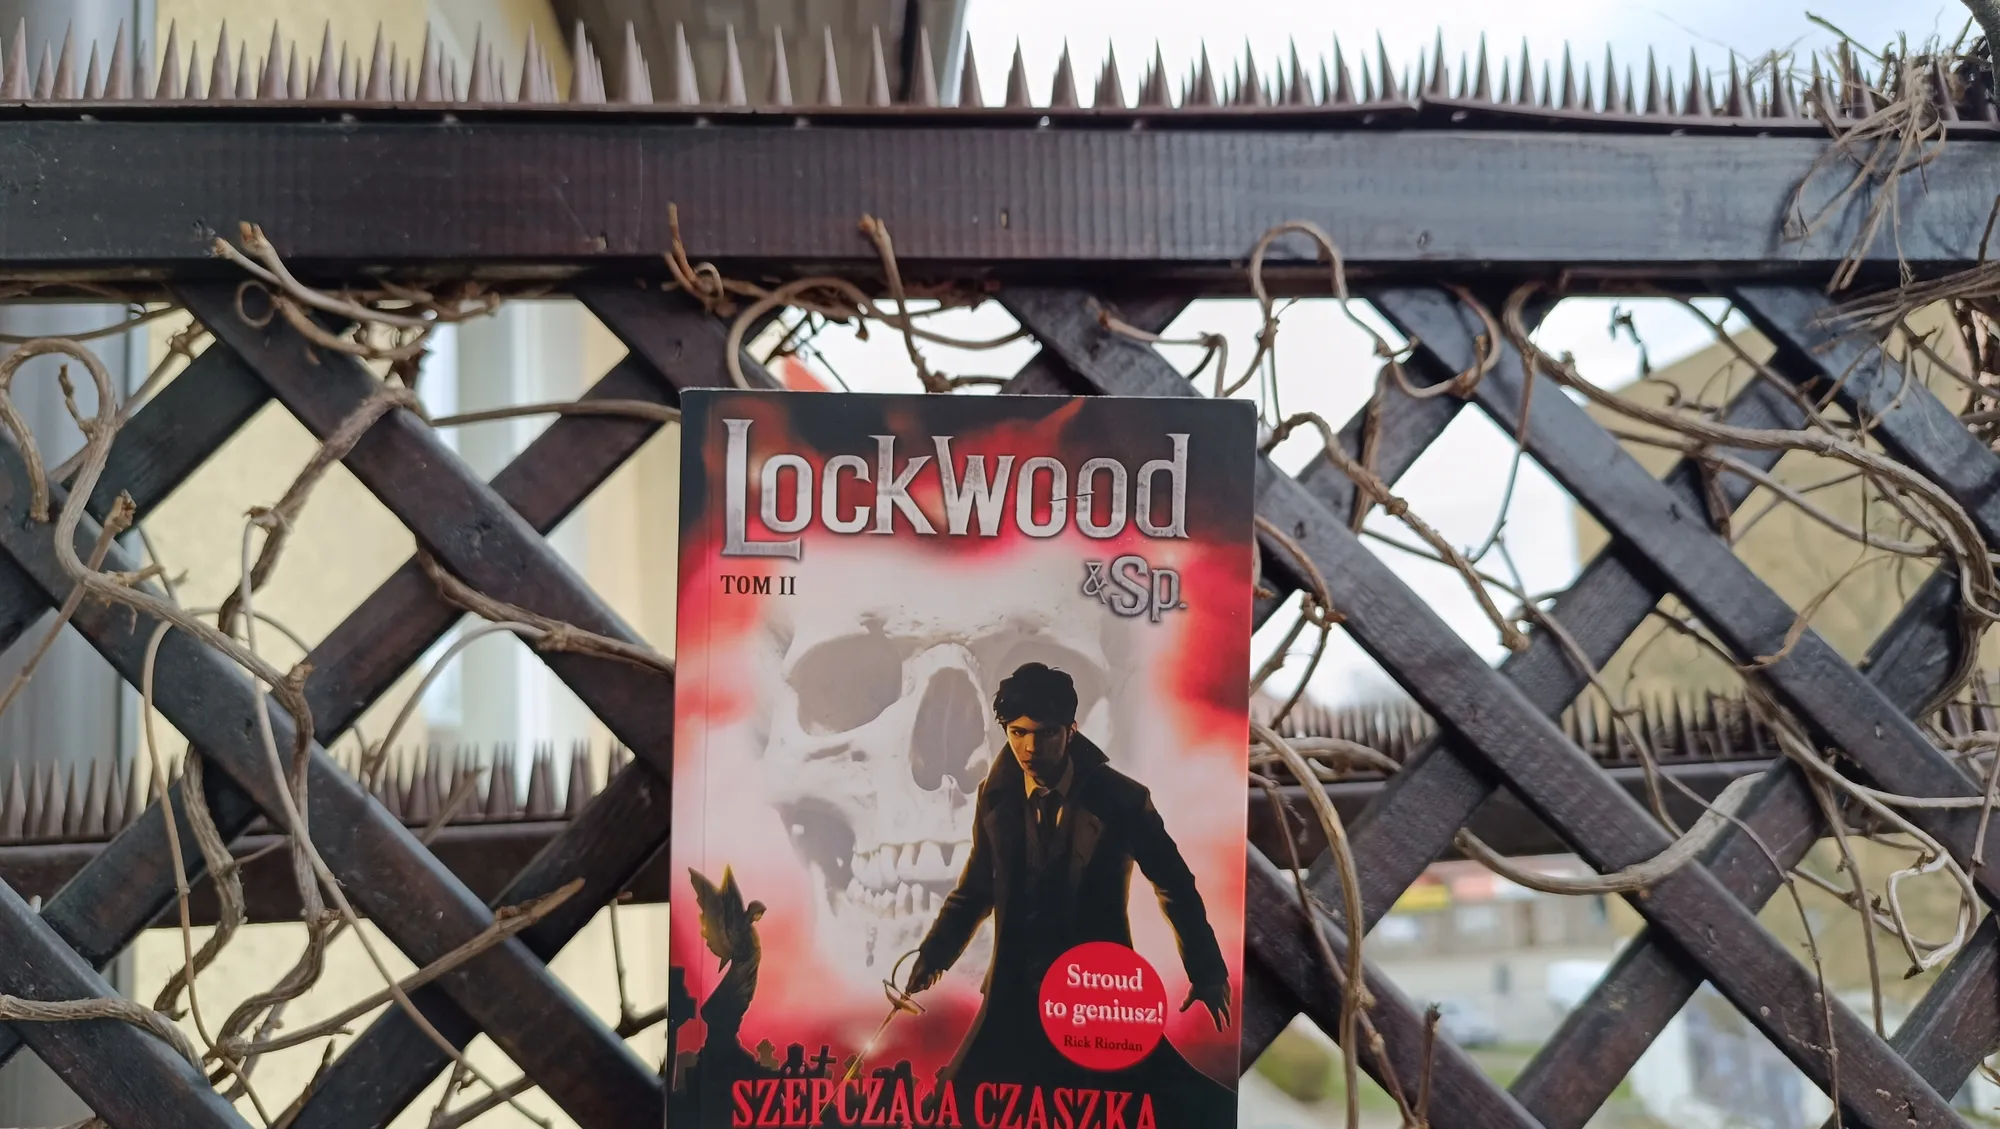 Wkrocz do niesamowitego świata "Lockwood & Spółka: Szepcząca czaszka"